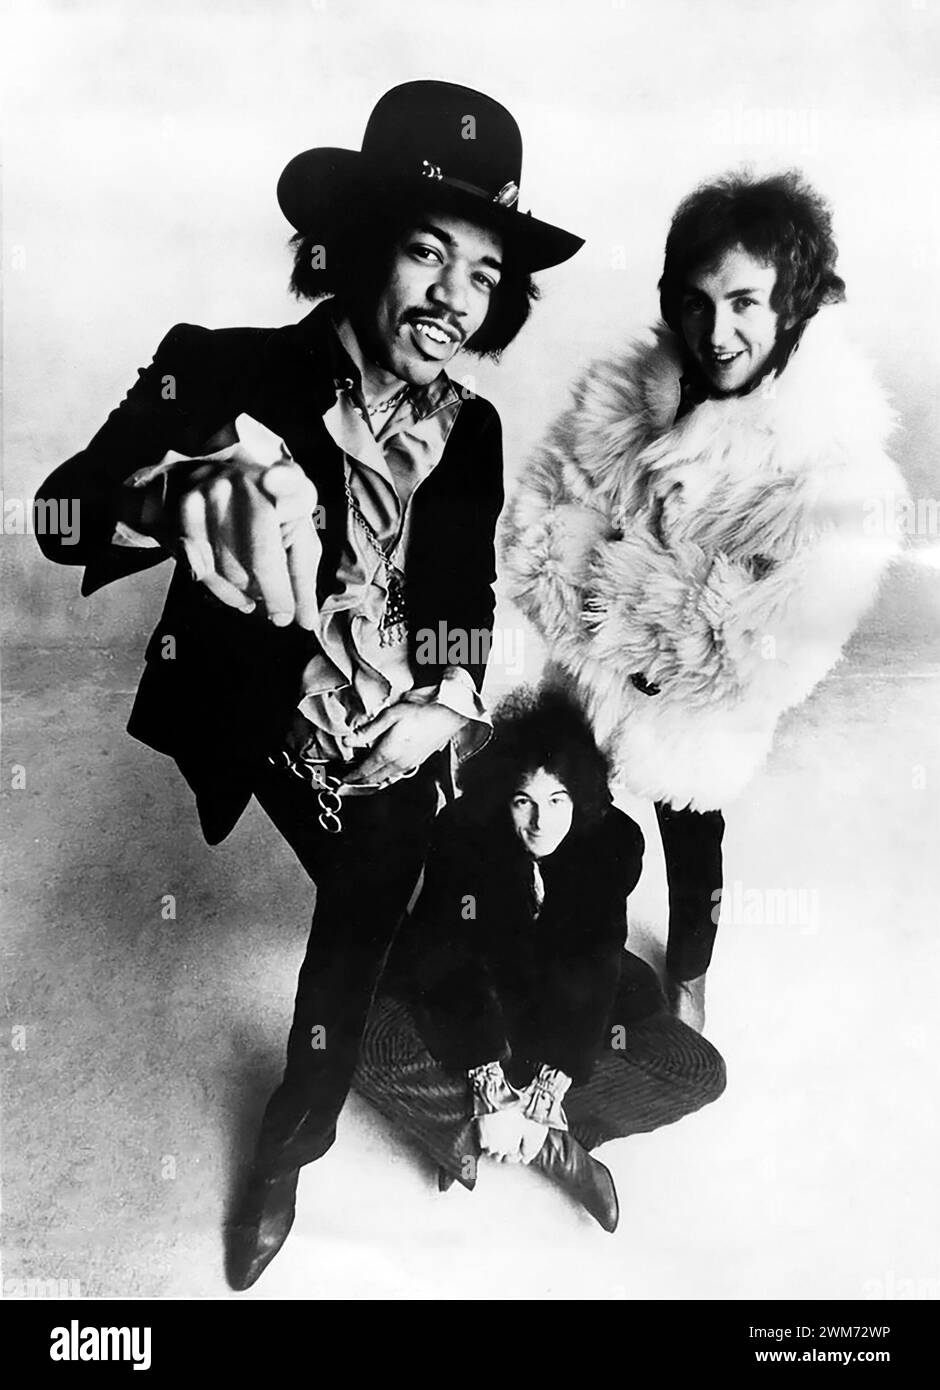 Jimi Hendrix. Ritratto del chitarrista e cantante americano James Marshall "Jimi" Hendrix (nato Johnny Allen Hendrix; 1942-1970) con la Jimi Hendrix Experience (Noel Redding e Mitch Mitchell) nel 1968 Foto Stock